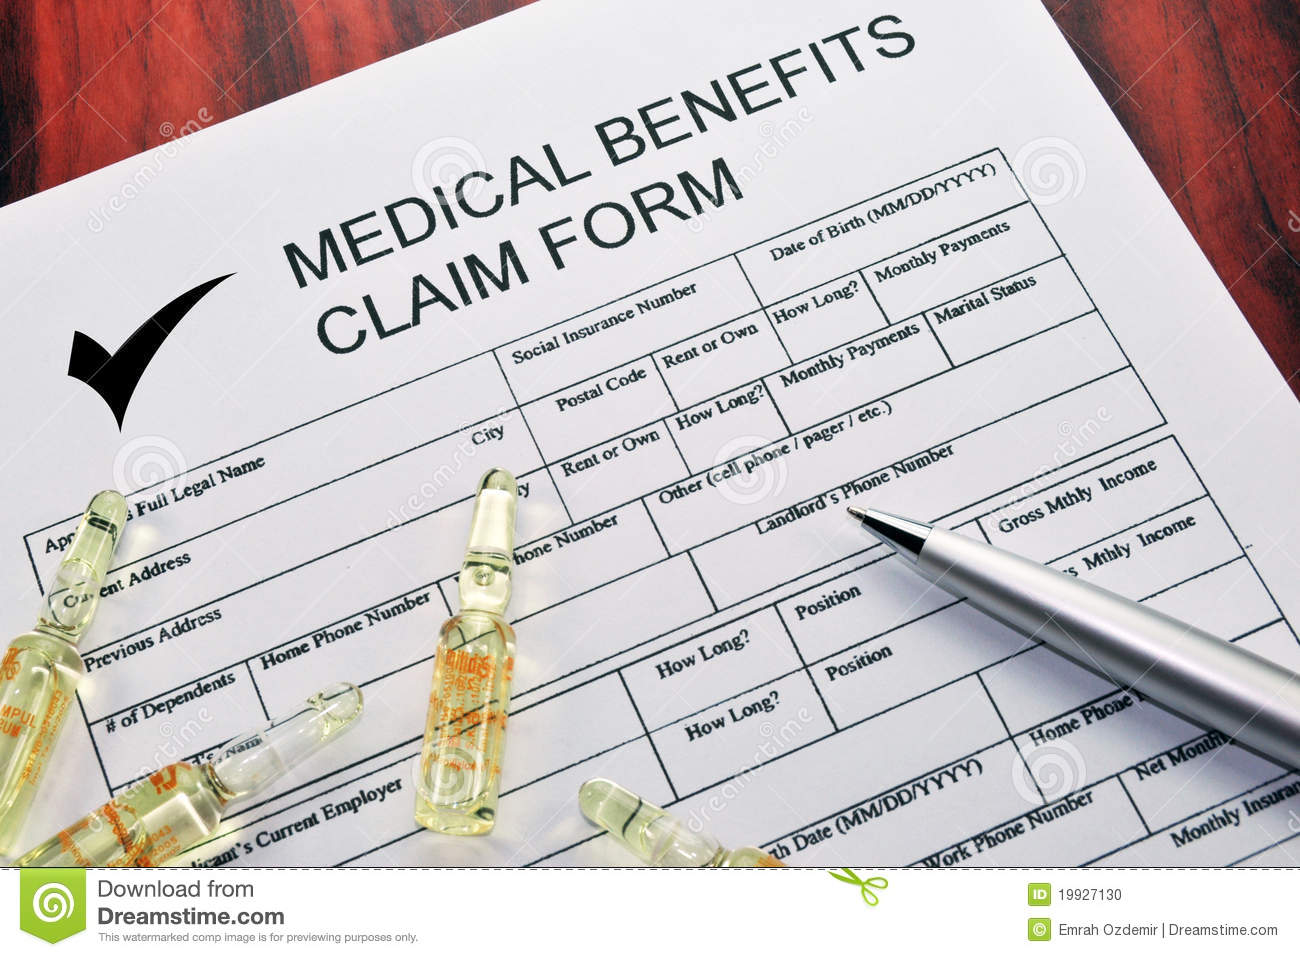 Medical Benefits Claim Form Stock Photo Image: 19927130